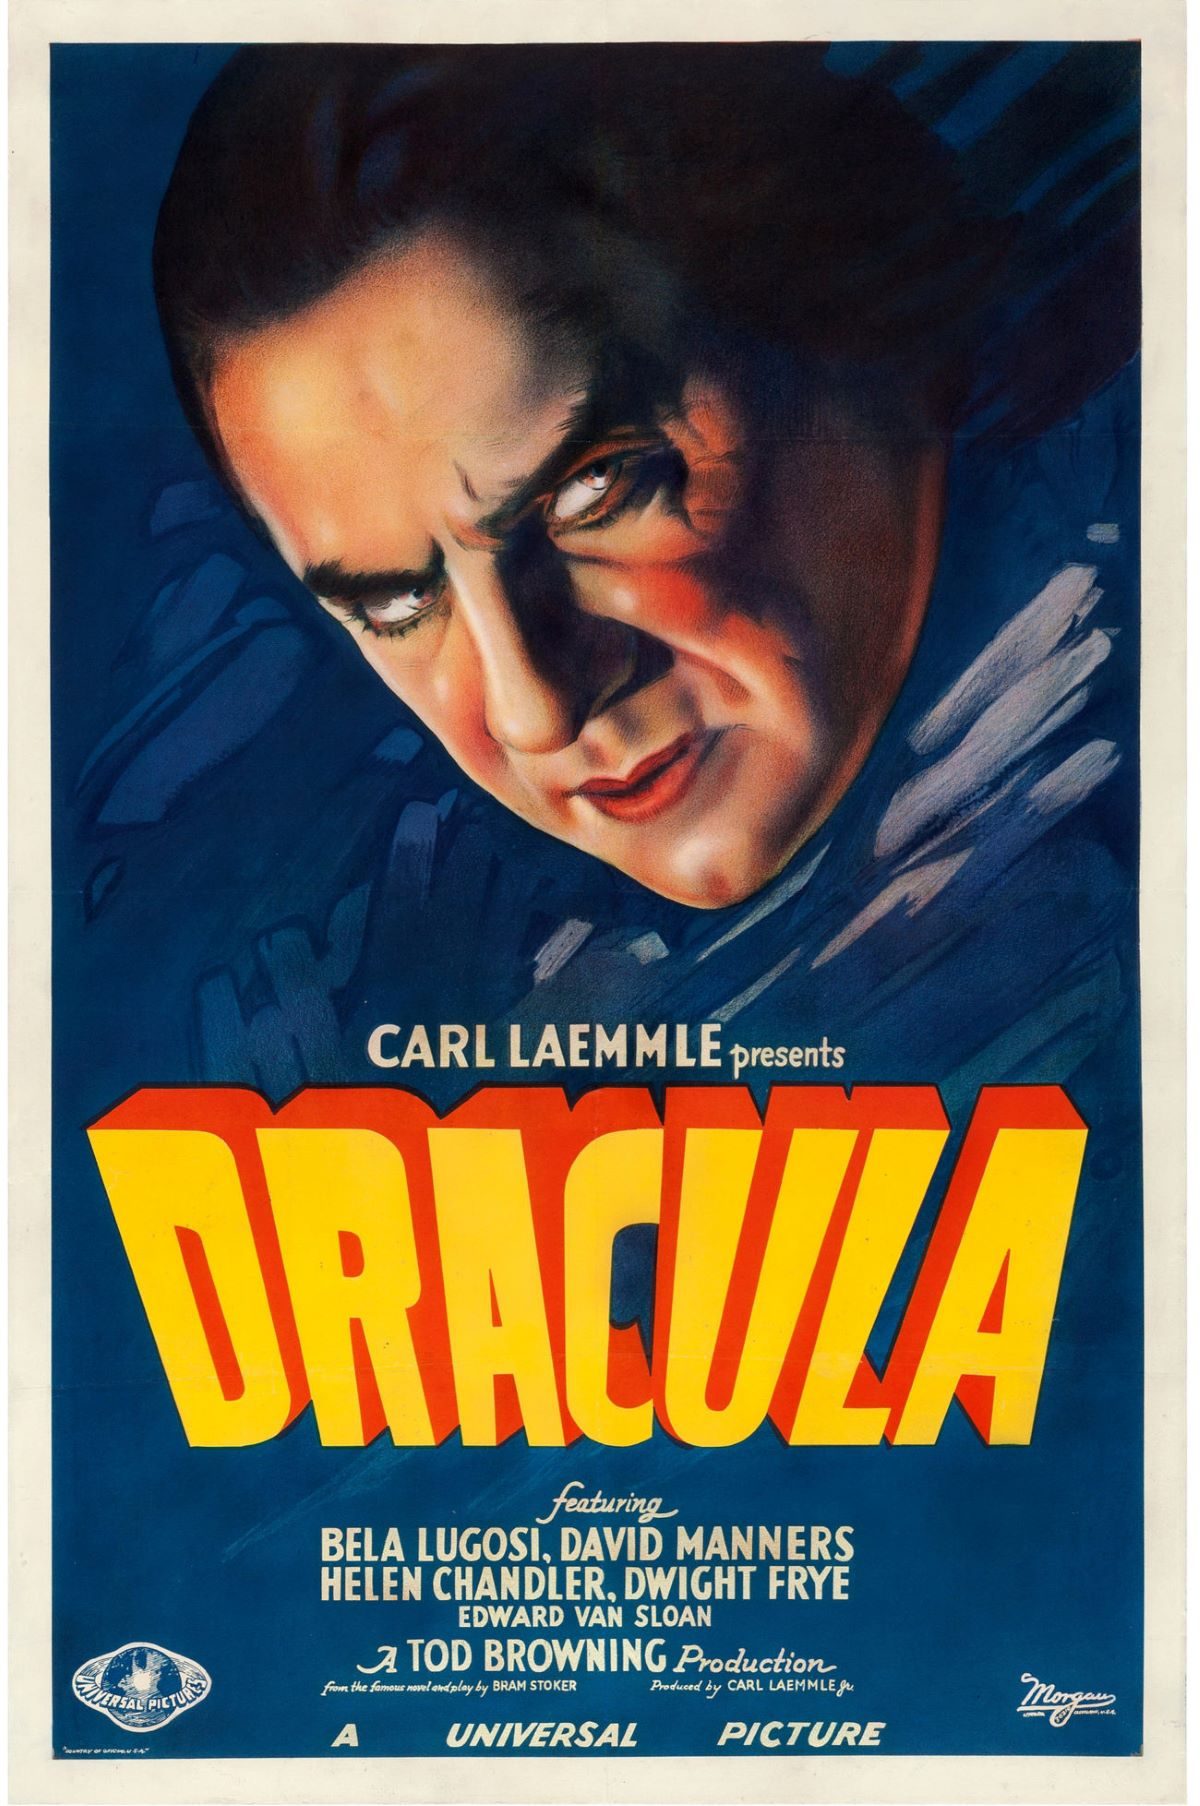 Dracula, Bram Stoker, Tod Browning, Bela Lugosi, Count Dracula, Dracula, film, movies, posters, 1930s